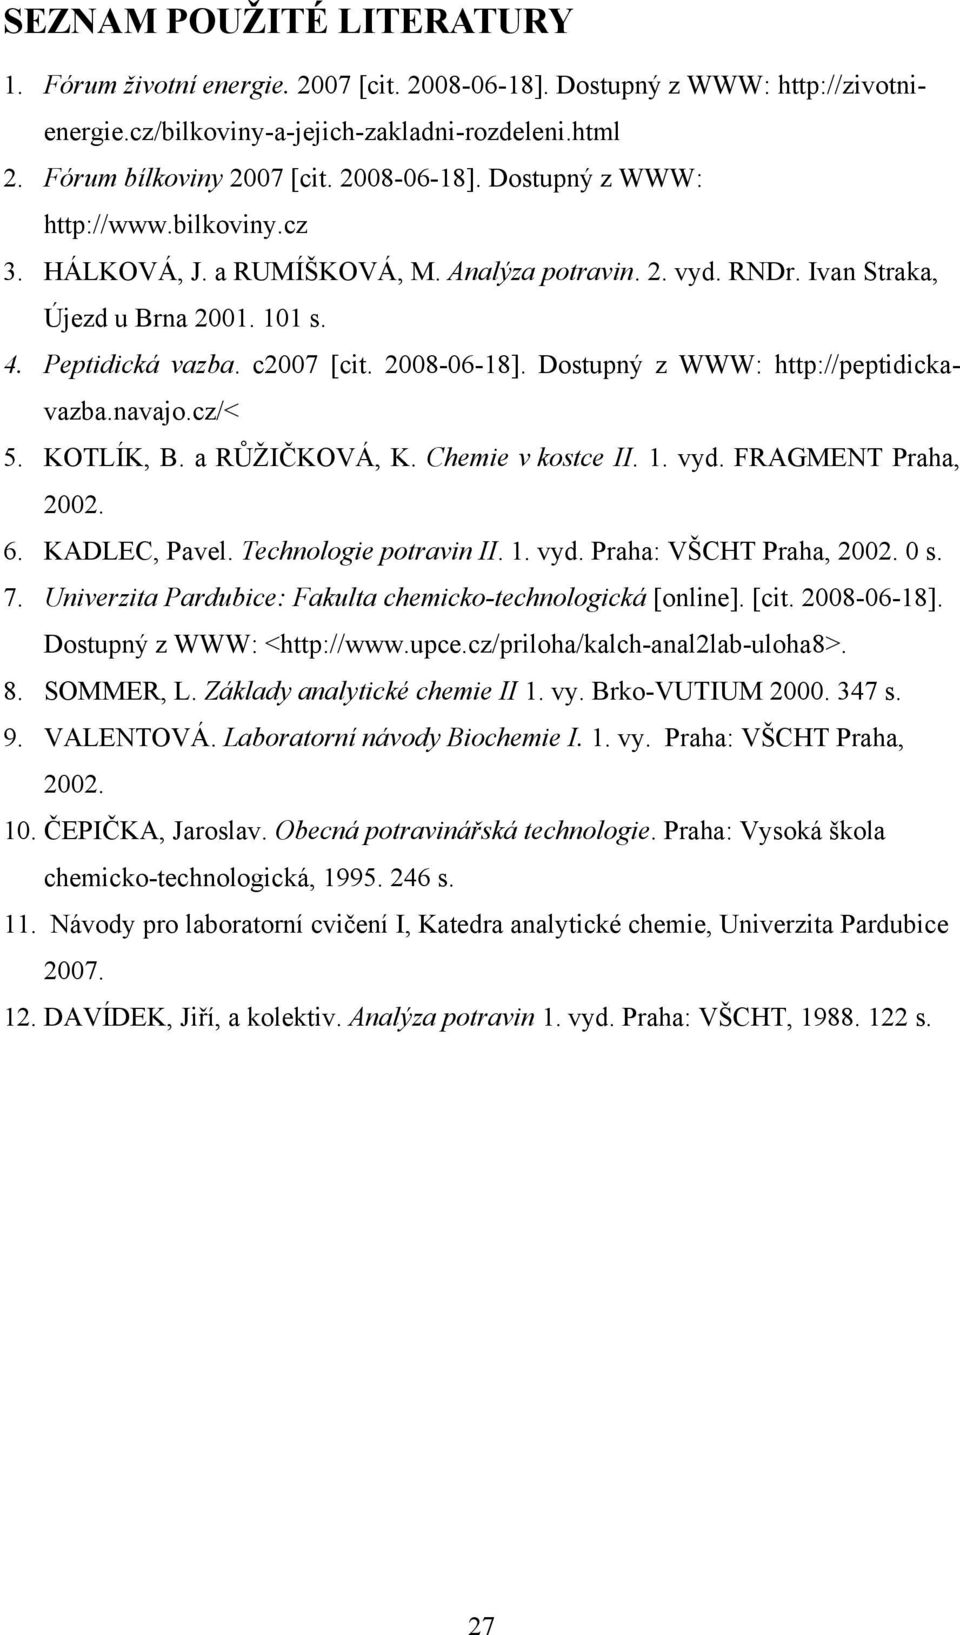 Dostupný z WWW: http://peptidickavazba.navajo.cz/< 5. KOTLÍK, B. a RŮŽIČKOVÁ, K. Chemie v kostce II. 1. vyd. FRAGMENT Praha, 2002. 6. KADLEC, Pavel. Technologie potravin II. 1. vyd. Praha: VŠCHT Praha, 2002.